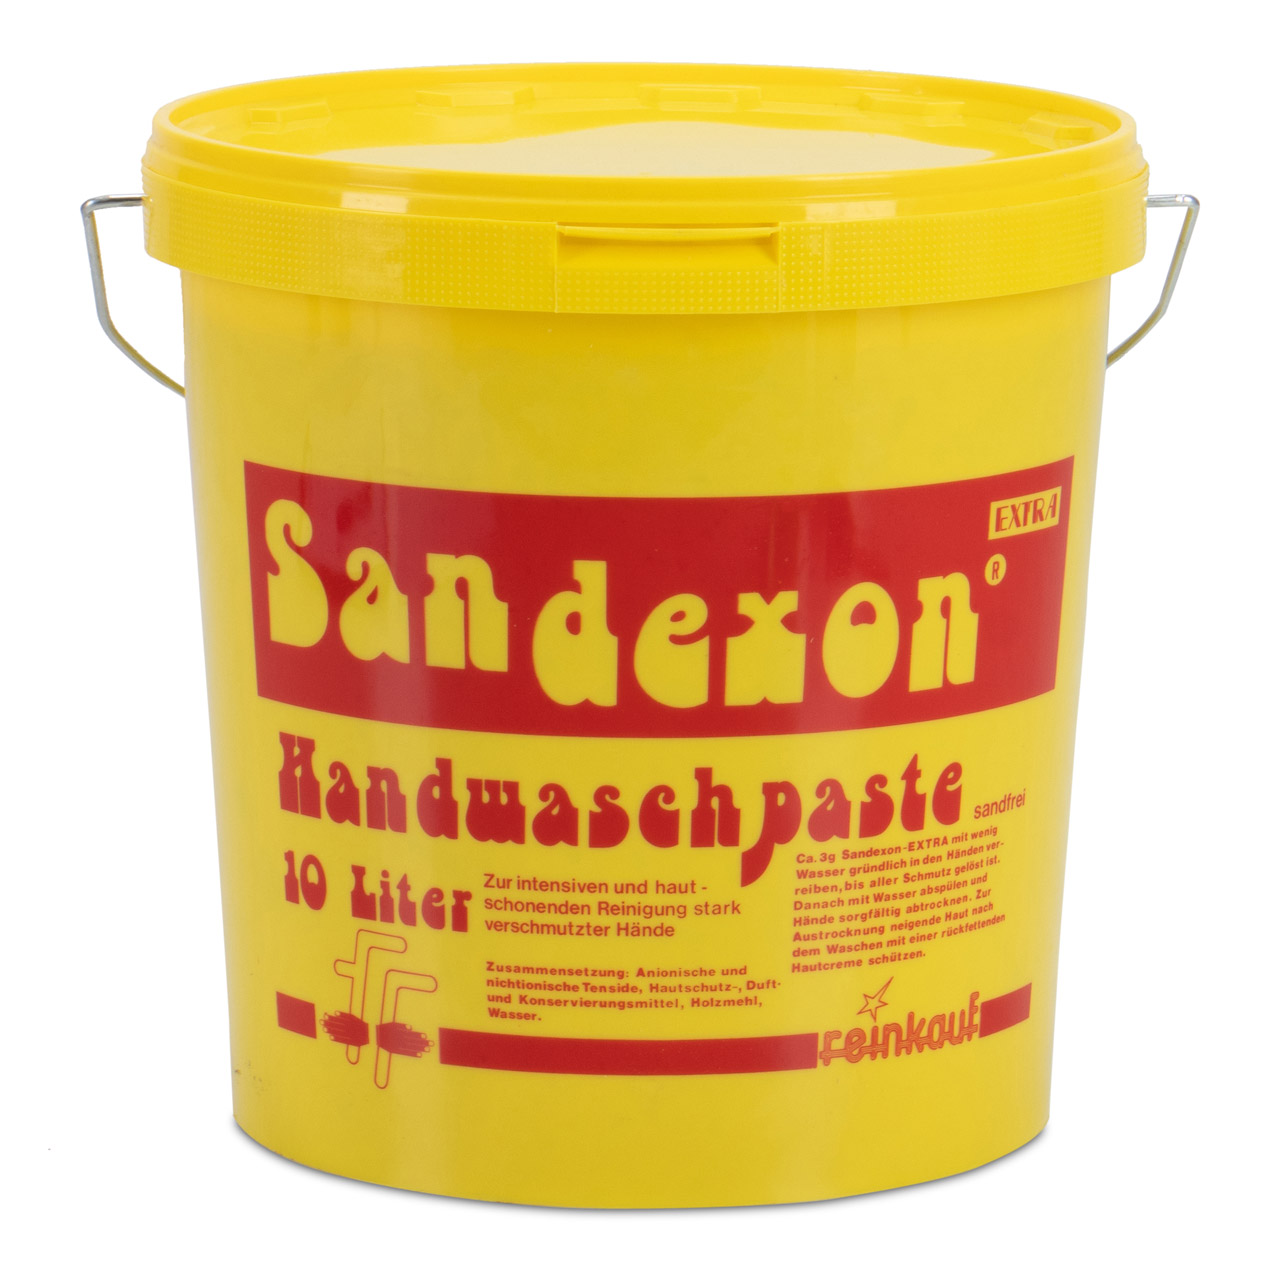 10L 10 Liter SANDEXON Handwaschpaste Handwaschcreme Handseife Handreiniger Seife